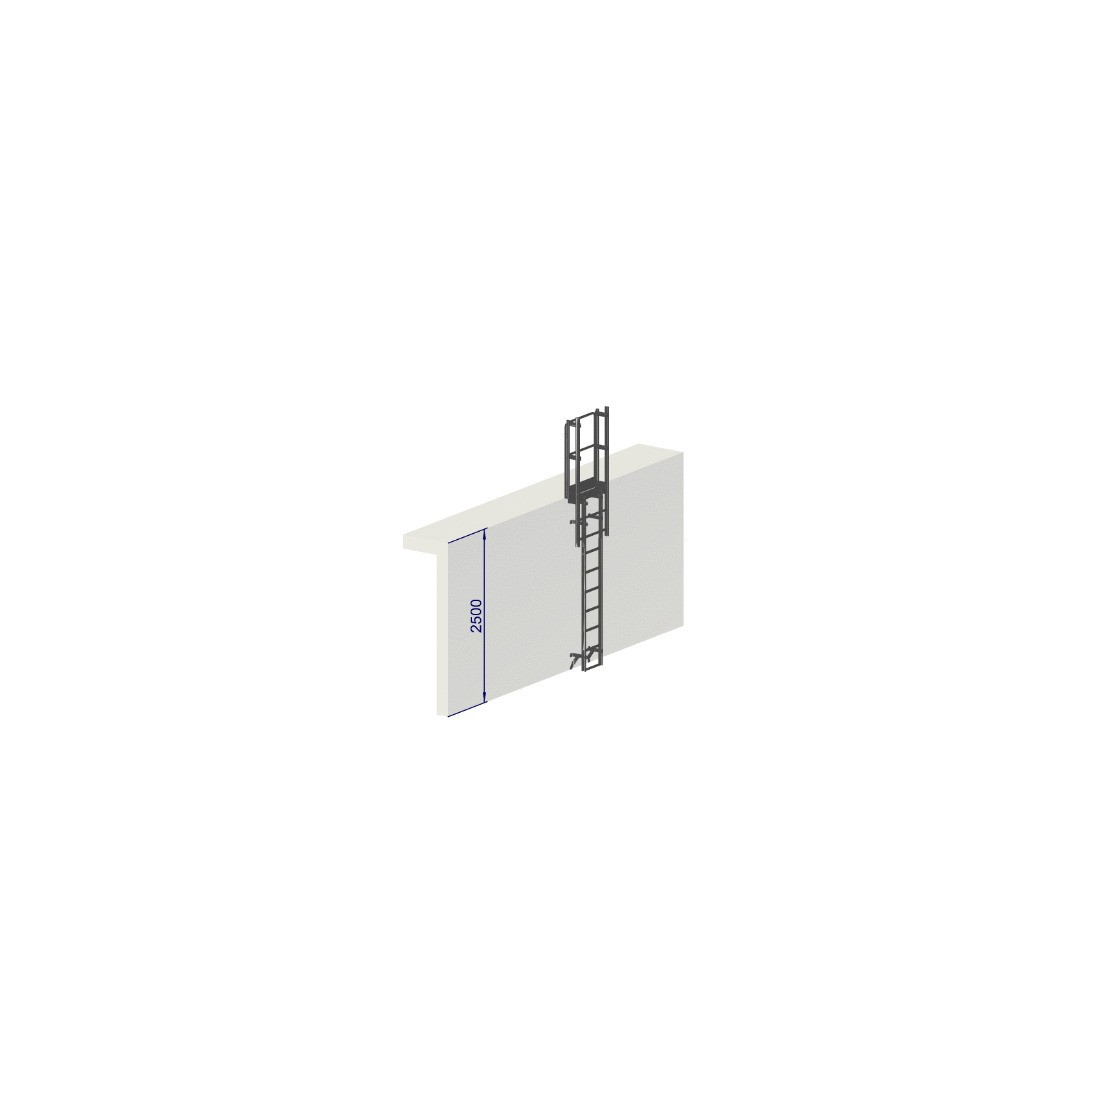 Escalera de protección dorsal - Crinolina altura 2500 mm sin aros de protección EN ISO 14122-4